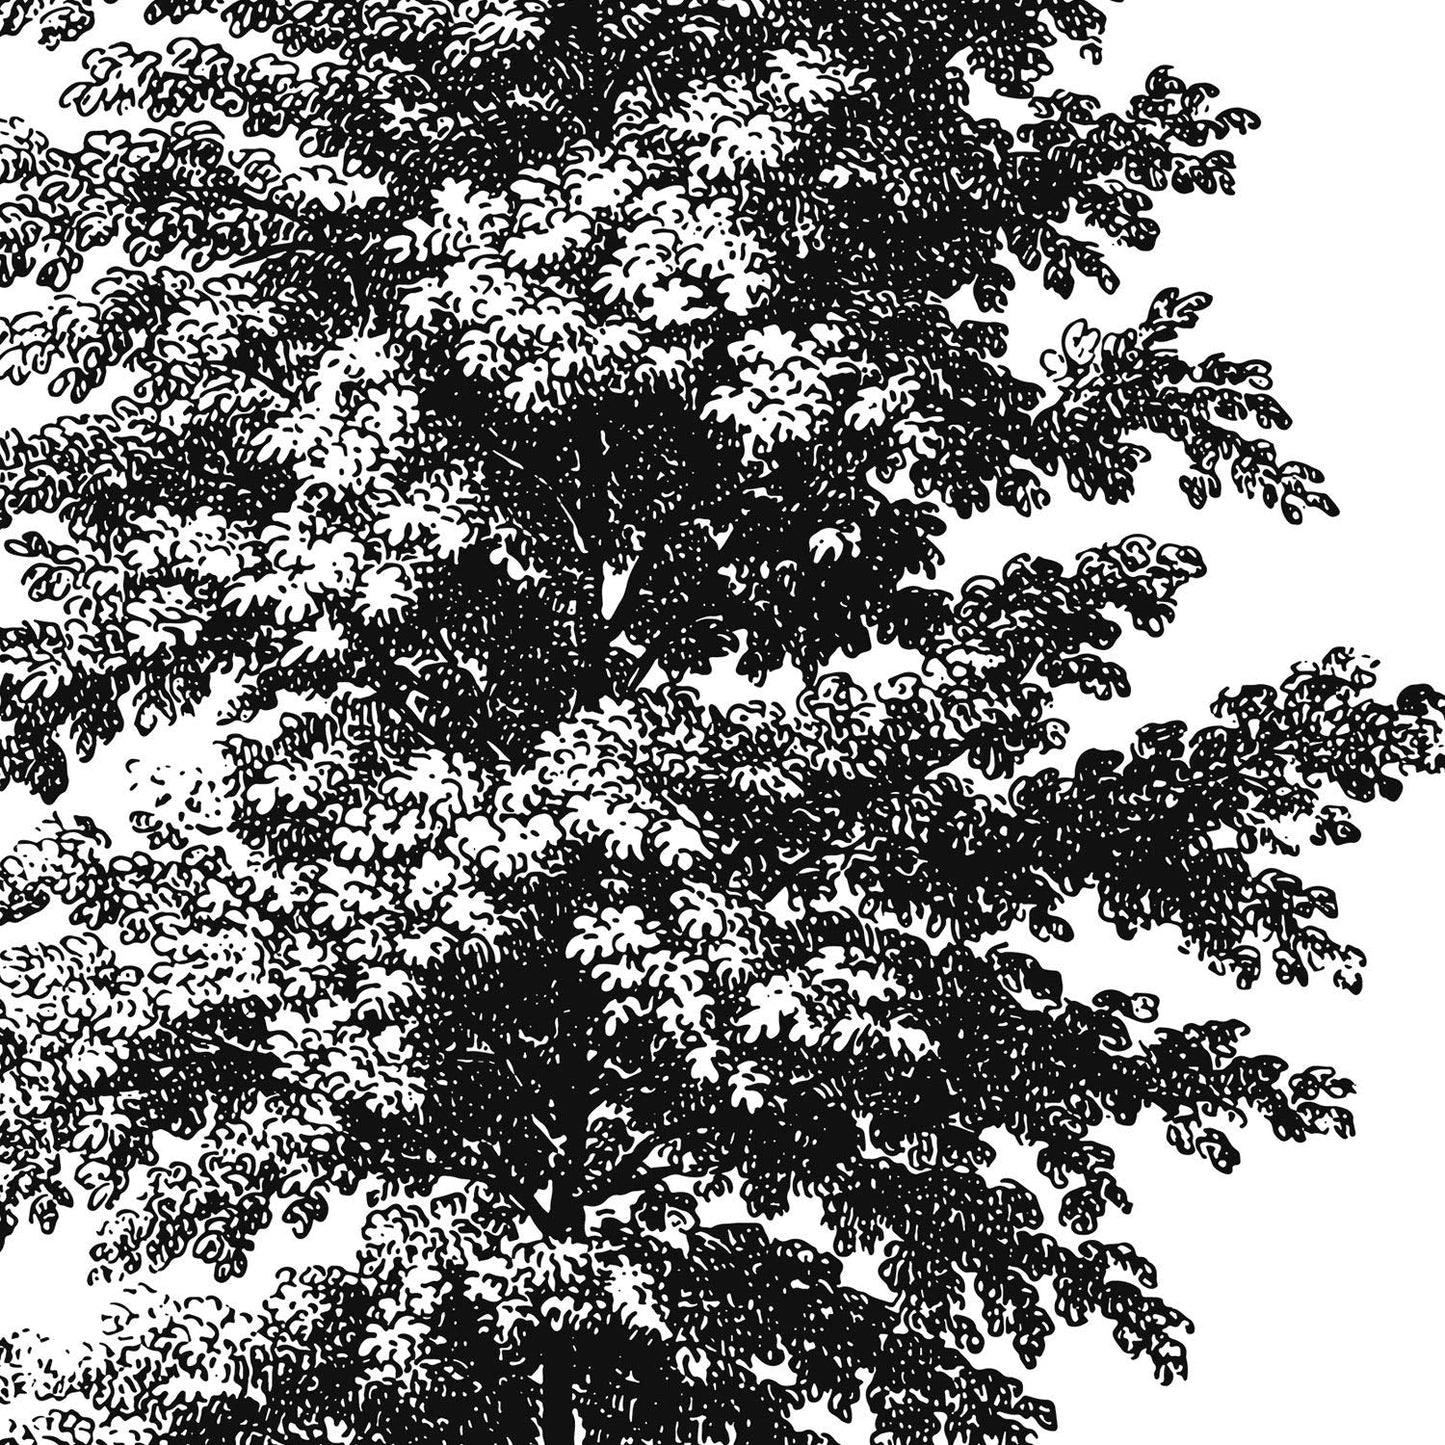 Set de cuatro láminas de arboles. Arboles tronco fino en cm, fondo blanco .-Artwork-Nacnic-Nacnic Estudio SL